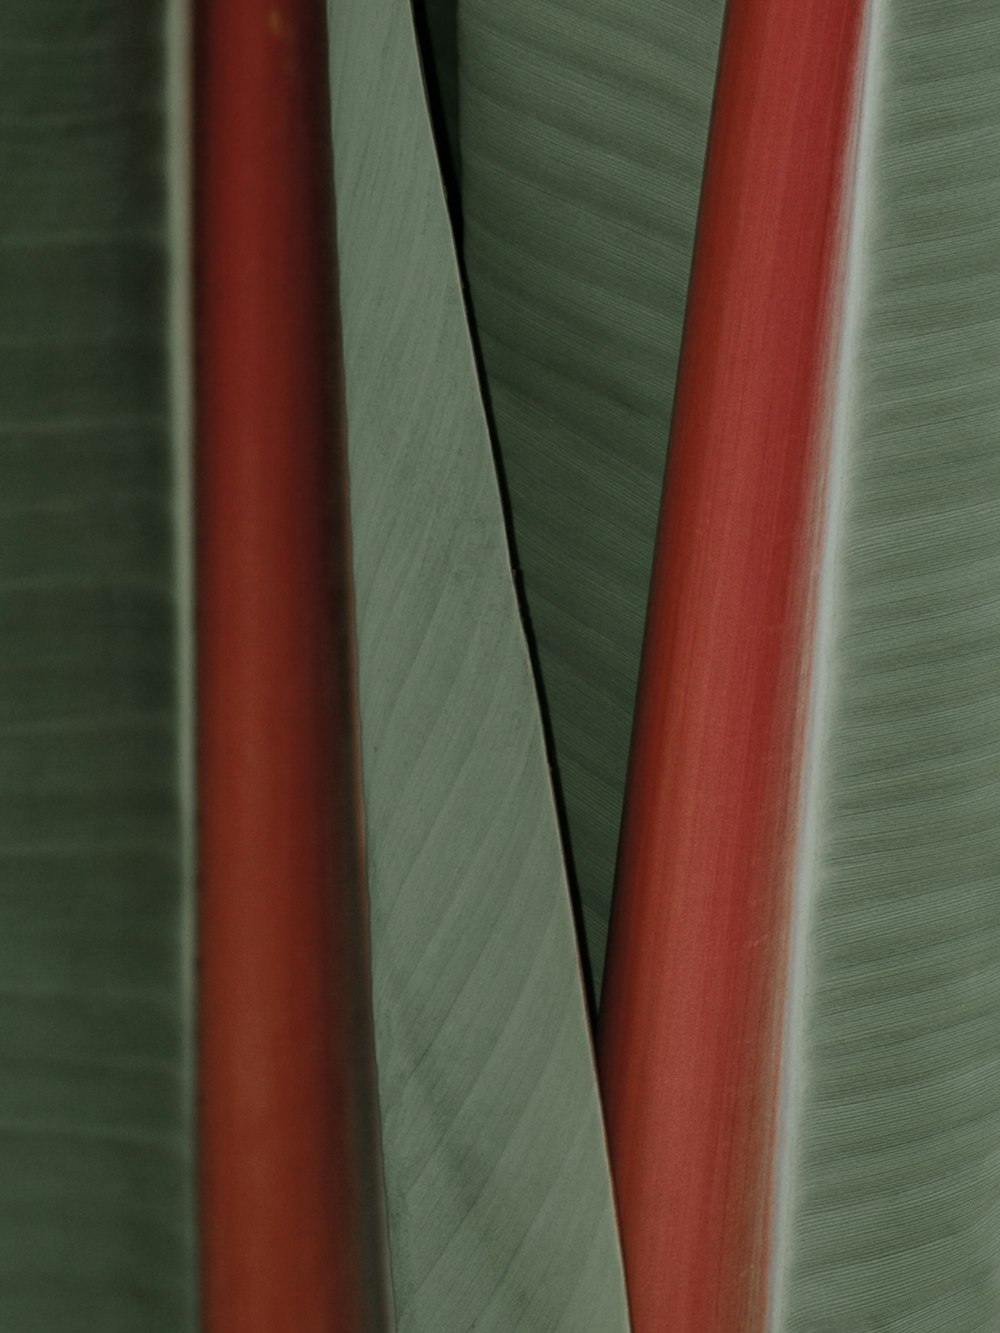 Eine Nahaufnahme einer roten und grünen Pflanze